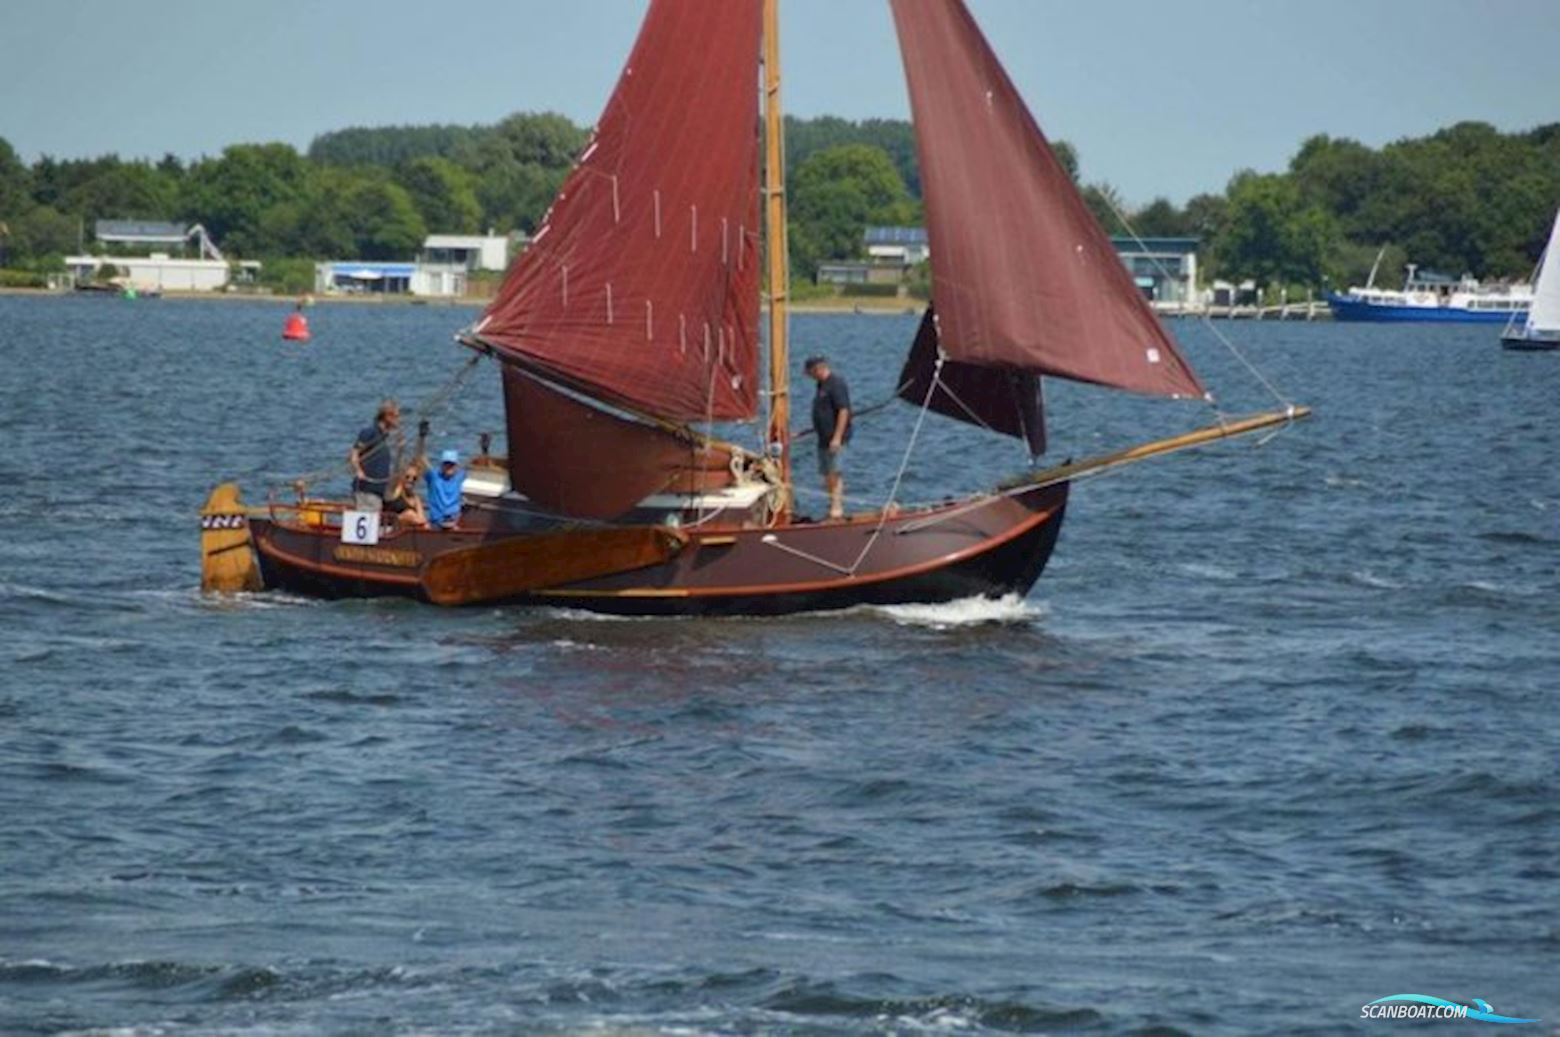 Vollenhovense Bol Kooiman en de Vries Sailing boat 1974, with Yanmar engine, The Netherlands